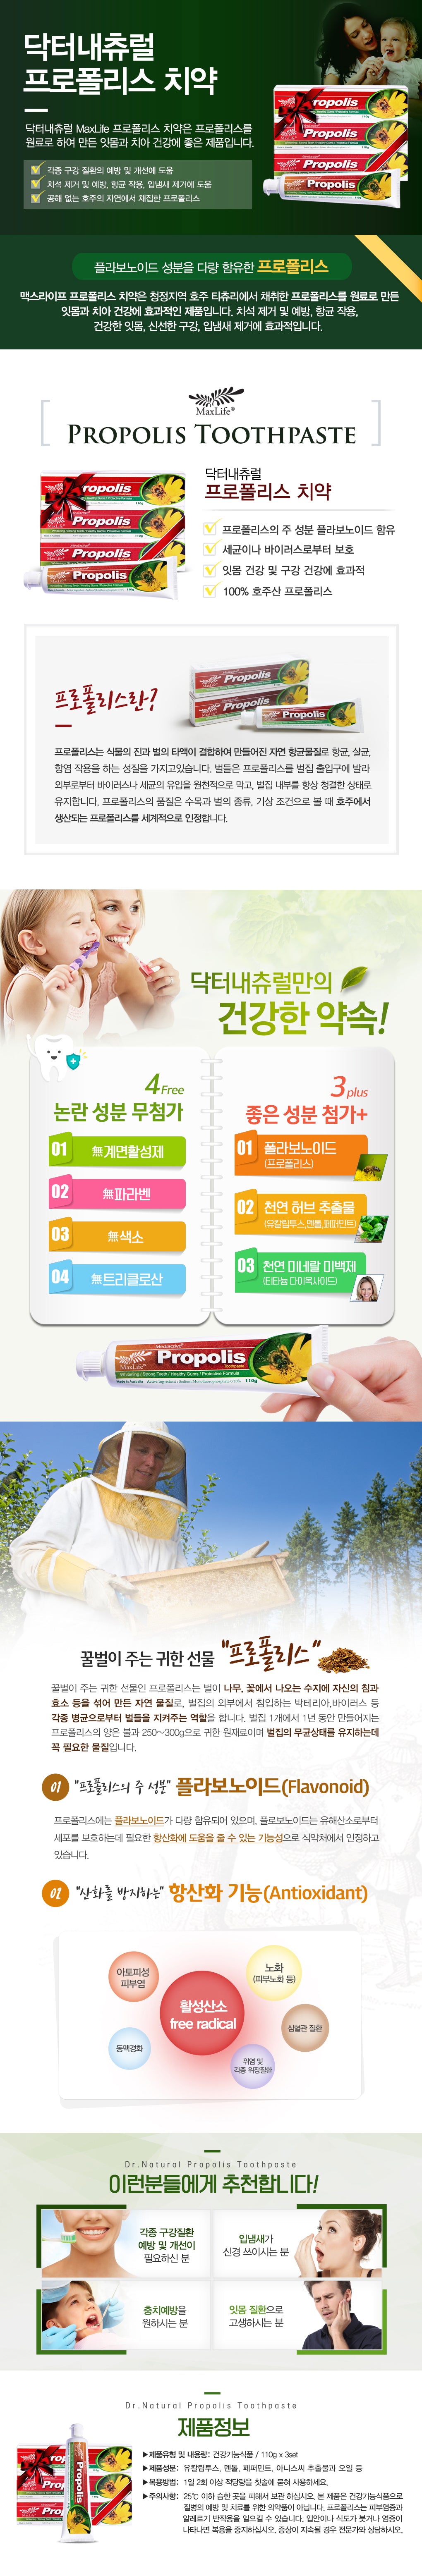 propolis-toothpaste-110gx3set